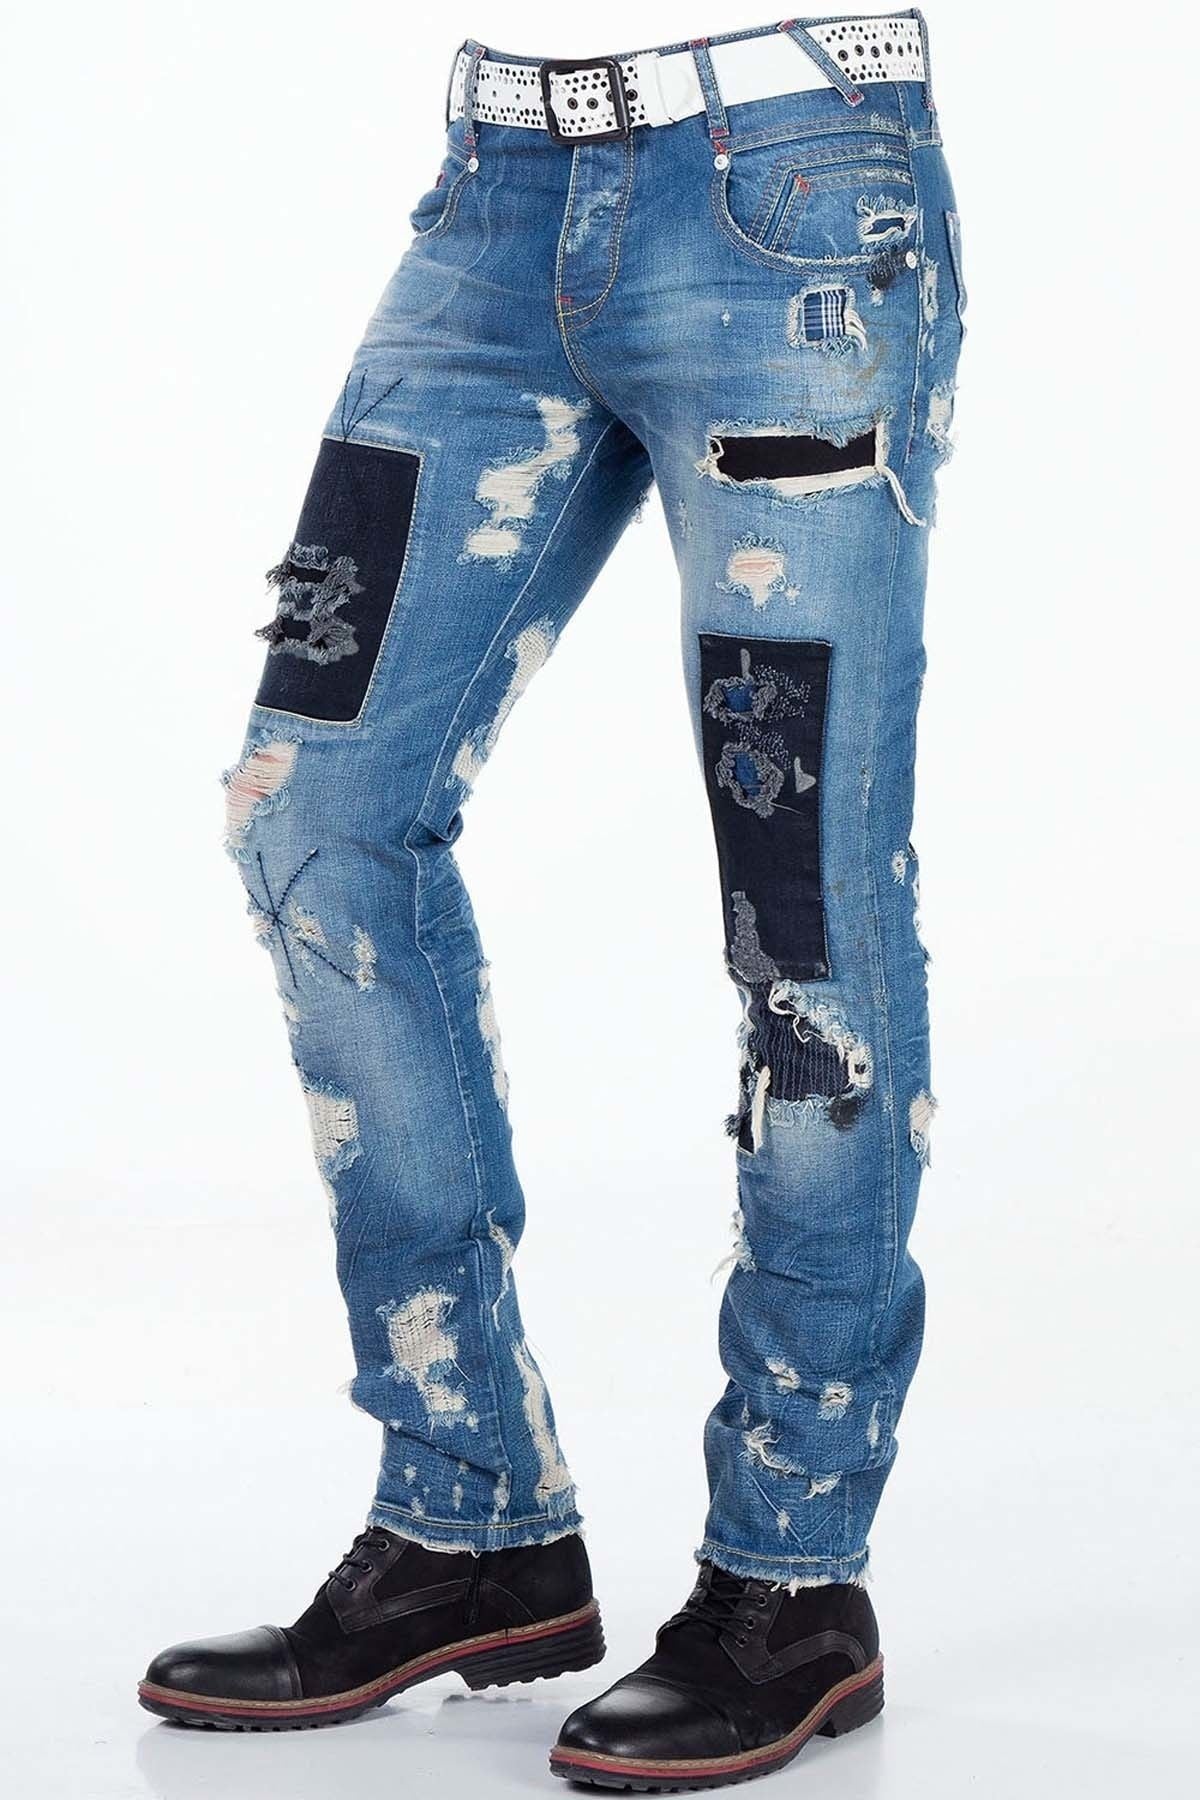 CD347 Jeans confortables pour hommes au look destroyed stylé